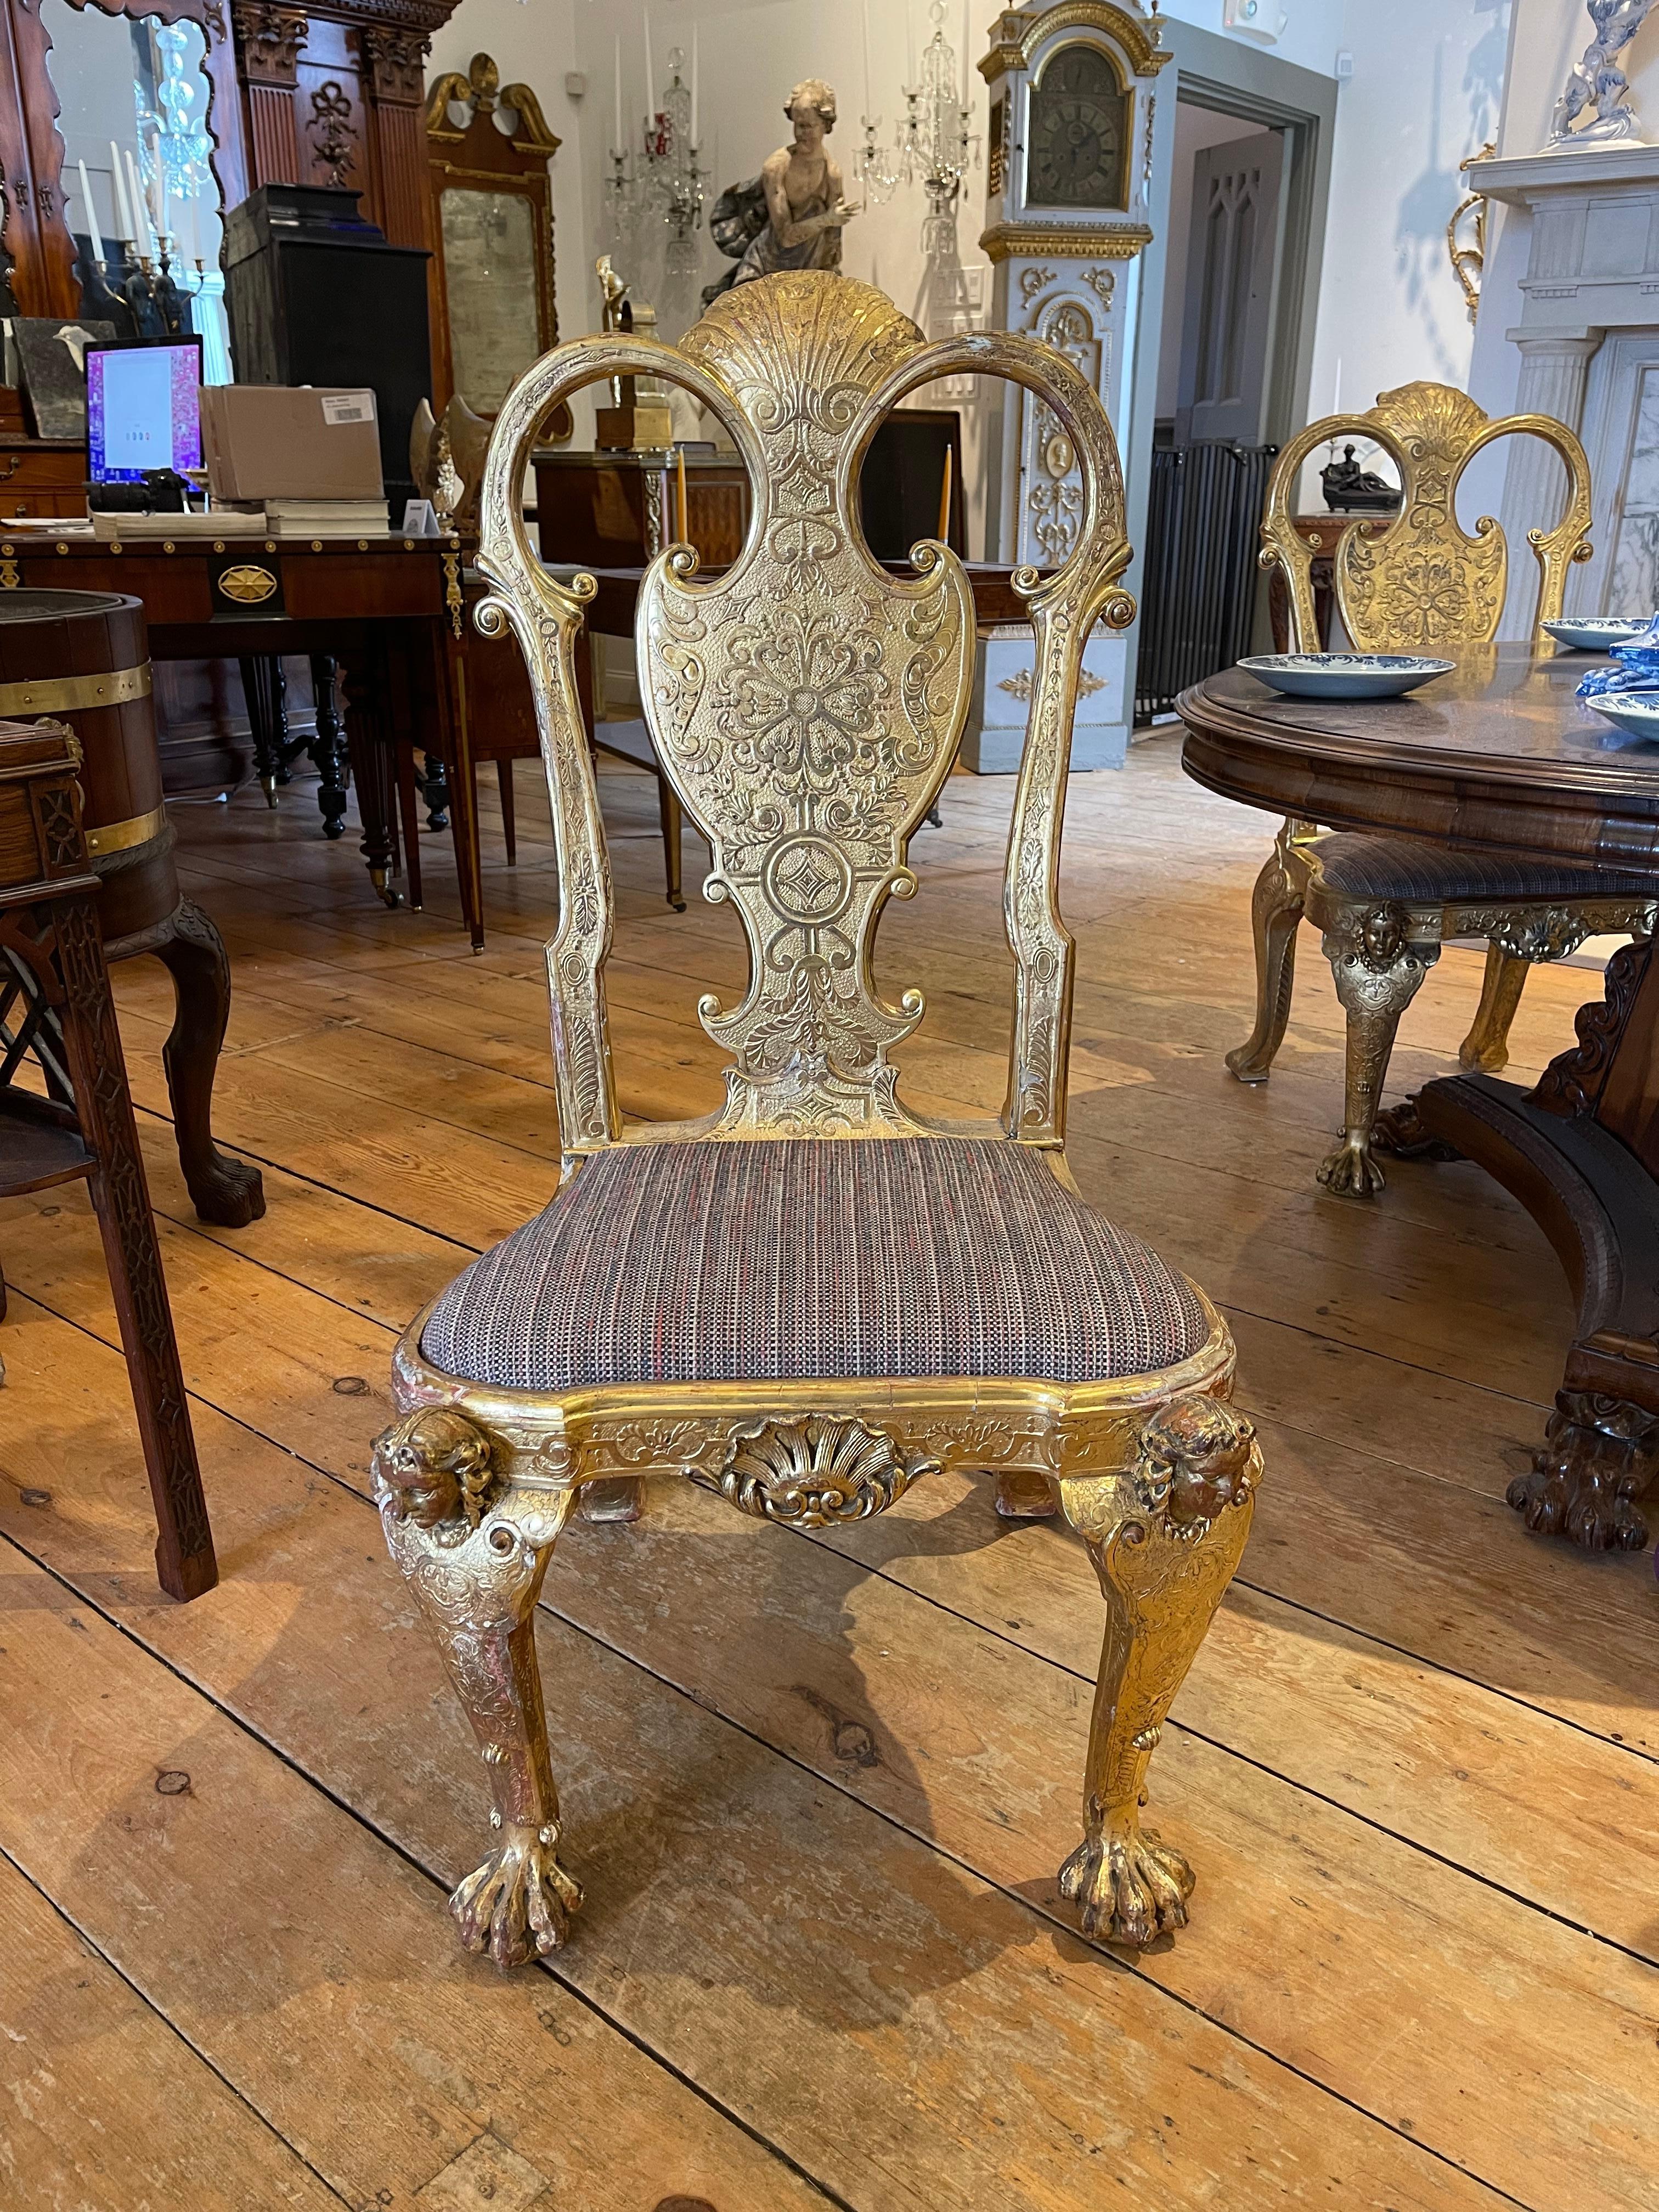 Remarquable ensemble de quatre chaises d'appoint dorées de style Queen Anne ou George I.  Gesso sculpté et doré dans la dorure à l'eau d'origine.  Grand, 18ème siècle Taille et proportion.  Une forme magnifique.  Utilisable et impressionnant.

Usure